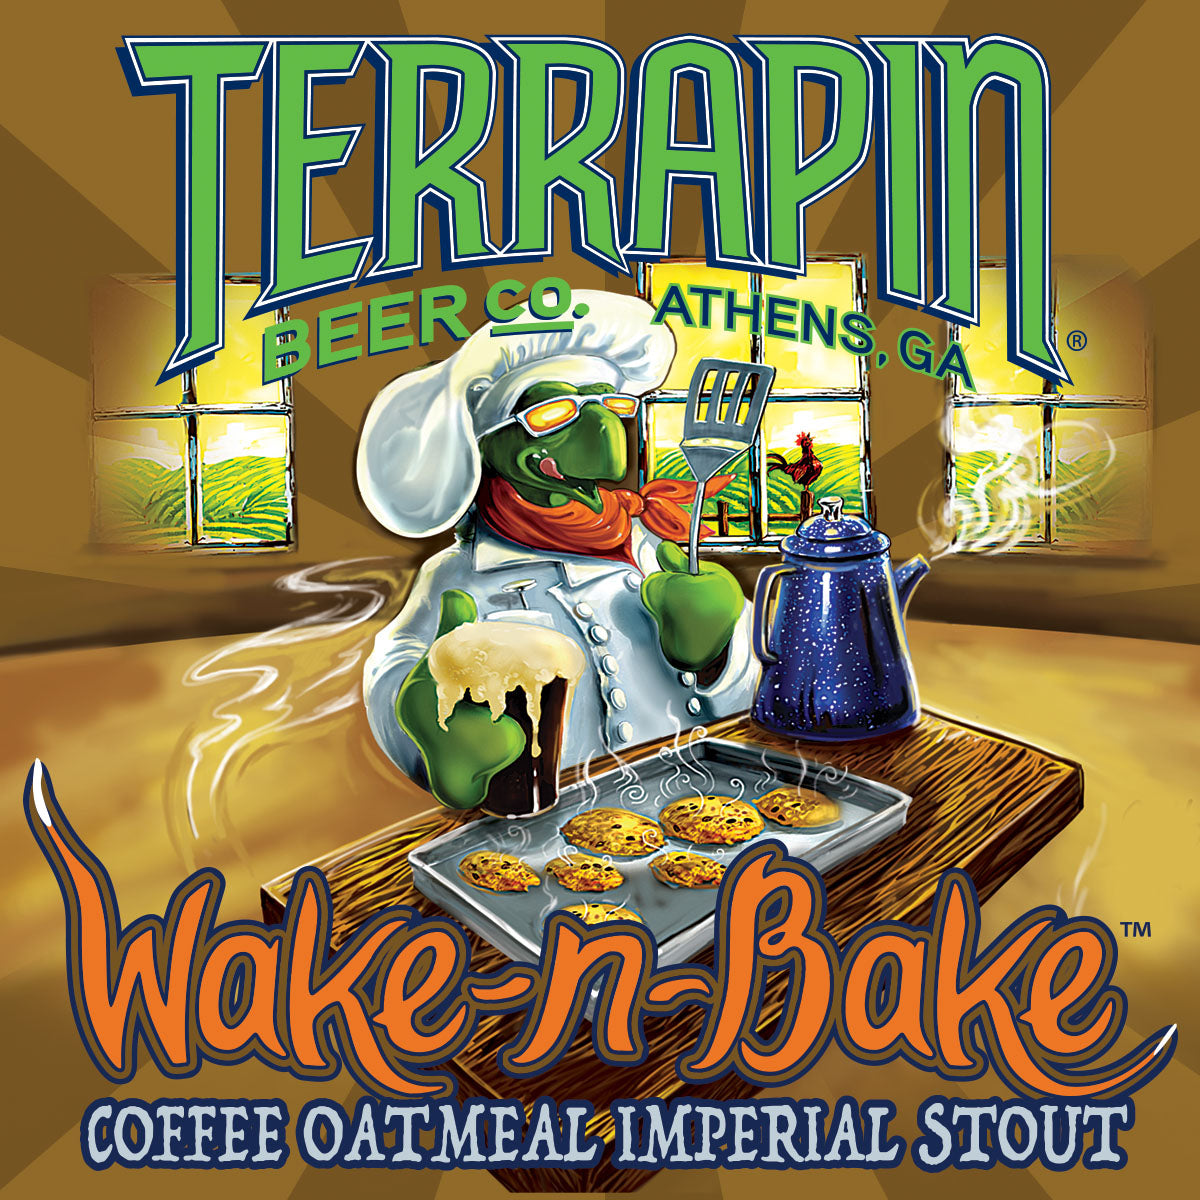 Wake-n-Bake Coffee Oatmeal Imperial Stout